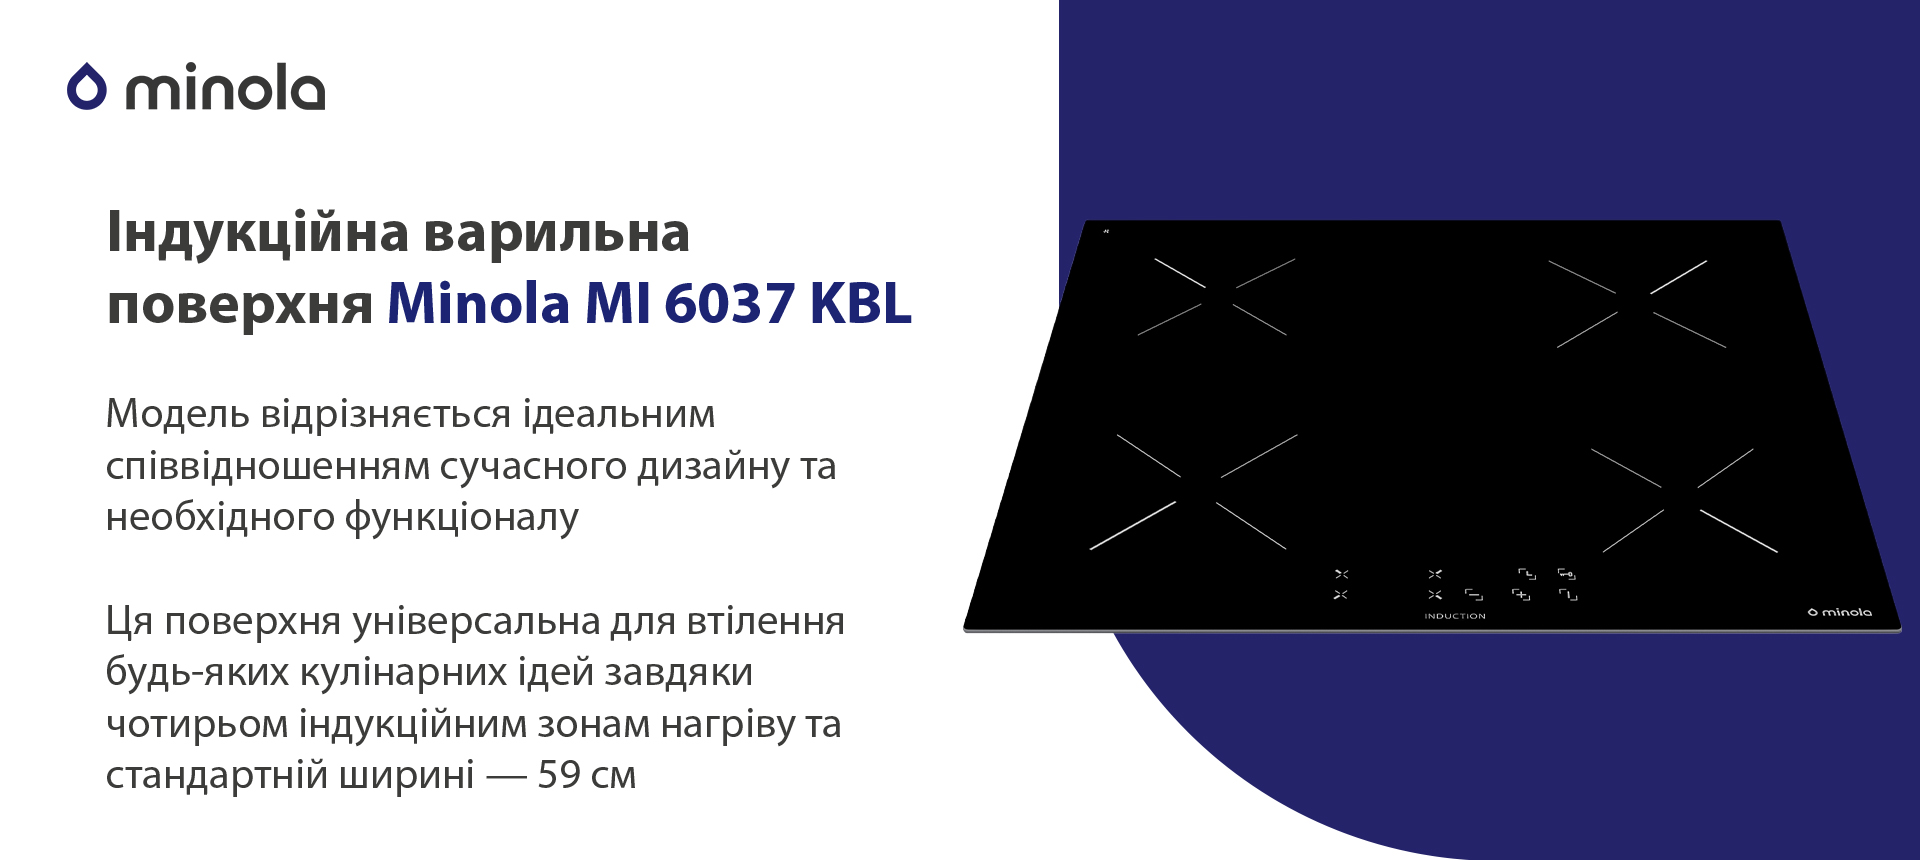 Індукційна варильна поверхня Minola MI 6037 KBL зовнішній вигляд - фото 9